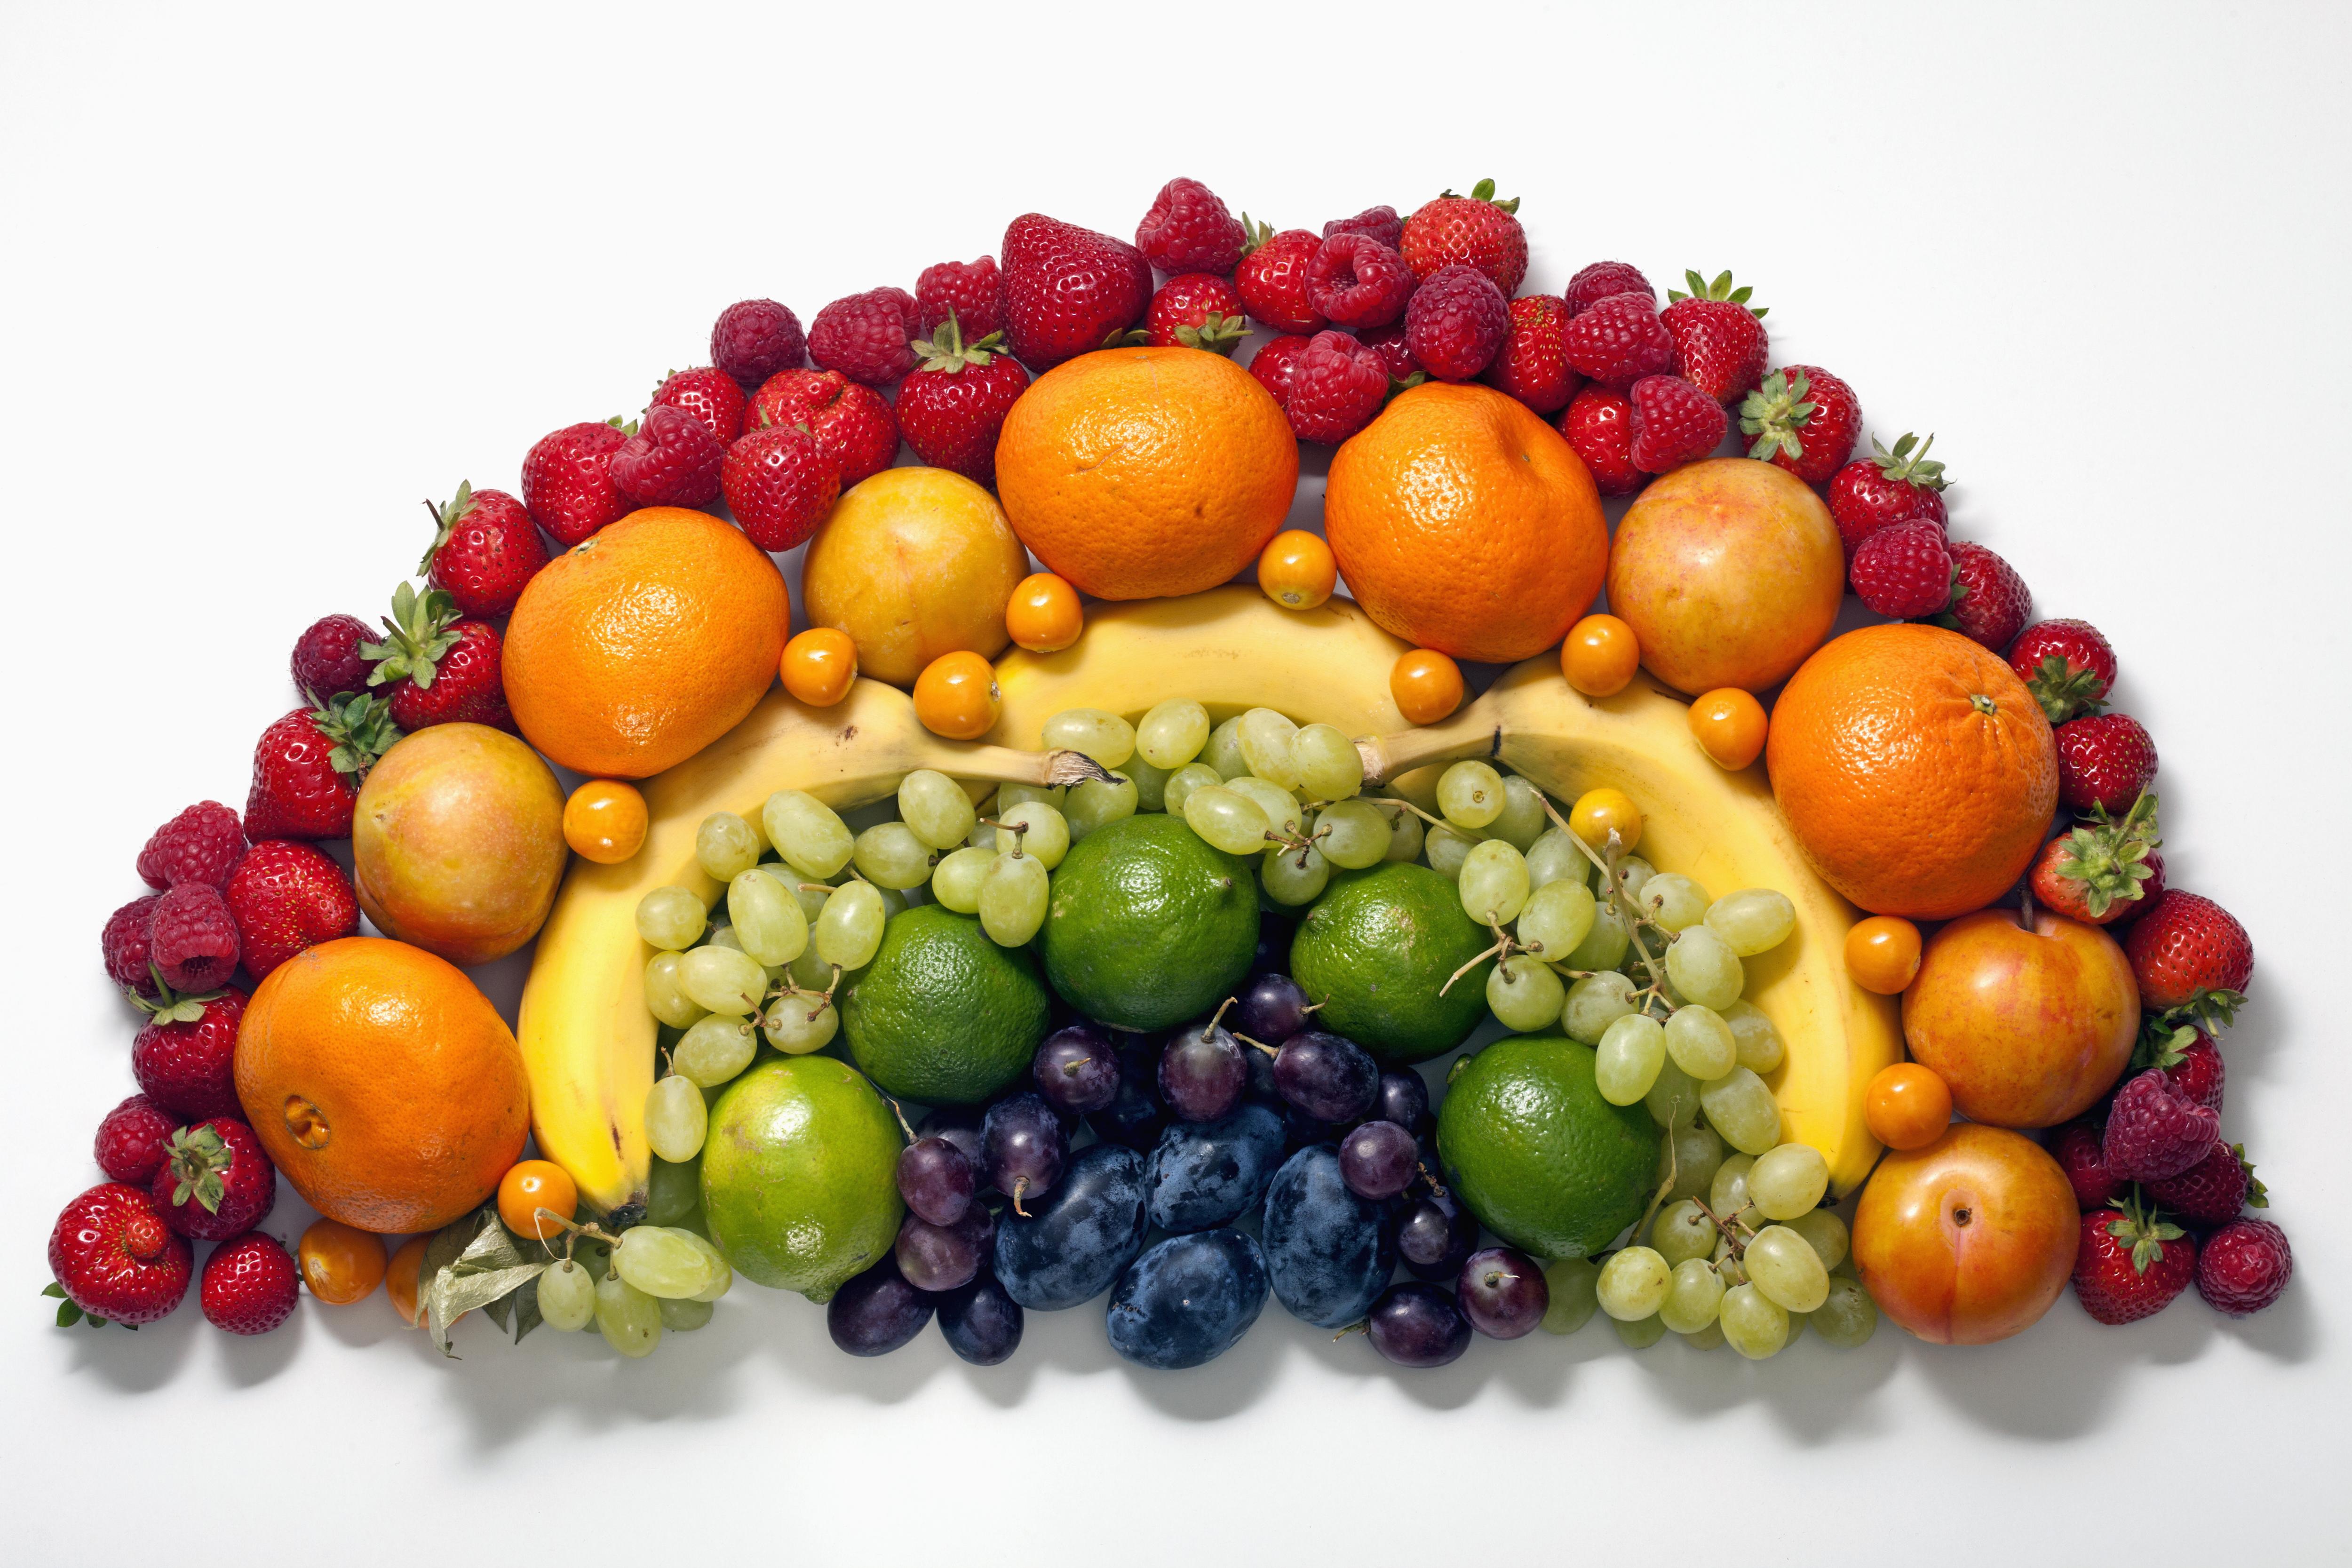 Кашам фруктам овощам. Овощи и фрукты. Фрукты. Овощи и фрукты Радуга. Овощи и фрукты по цветам радуги.